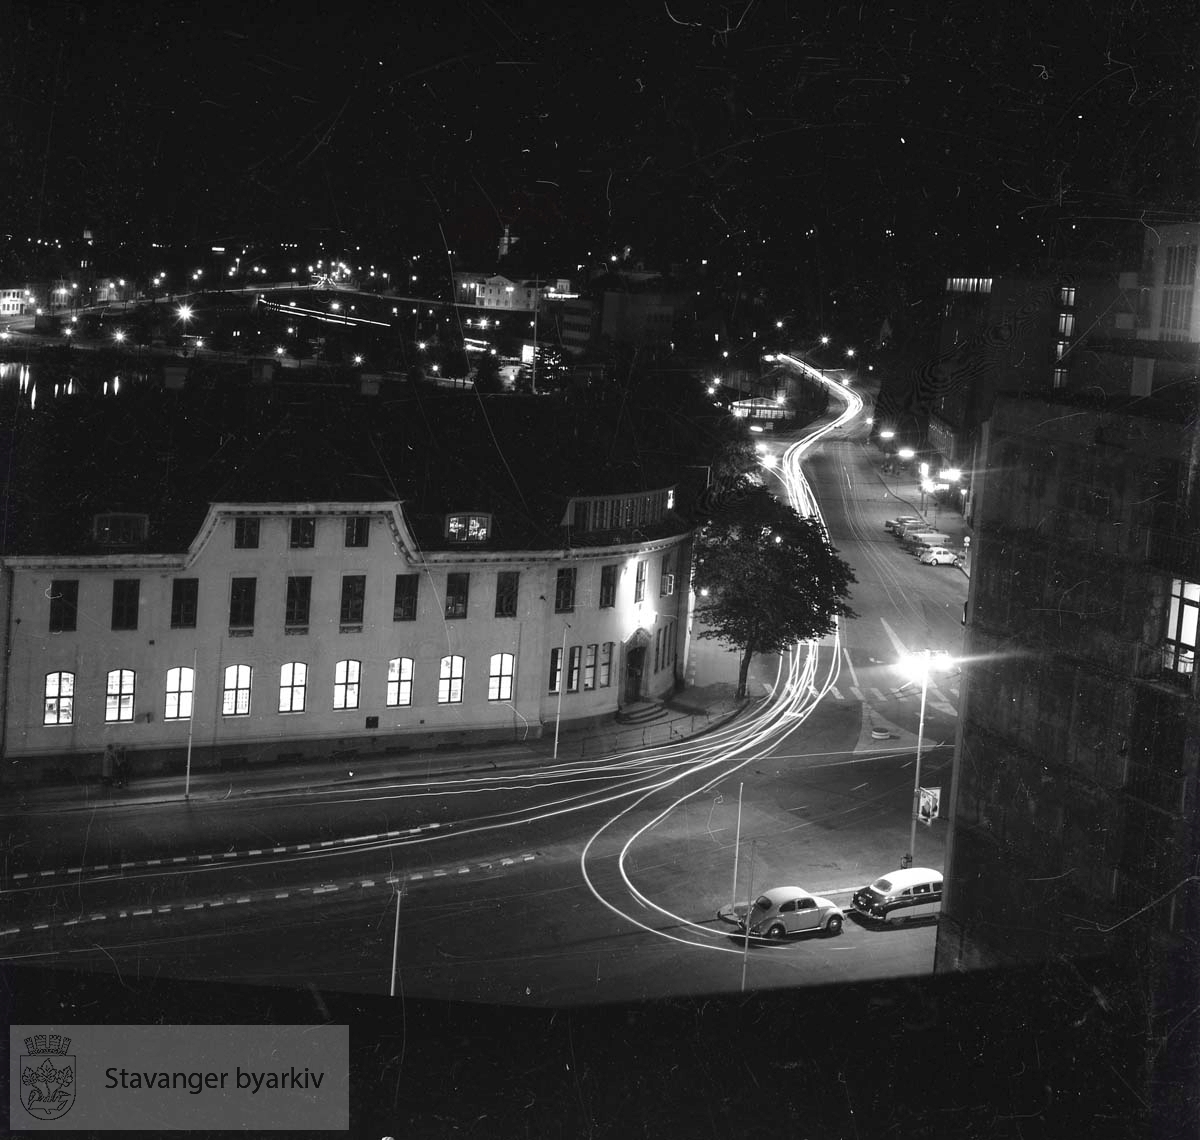 Hotell Atlantic, Rogalandsbanken og Postkontoret. Fotografen eksperimenterer med lang blenderåpningstid.